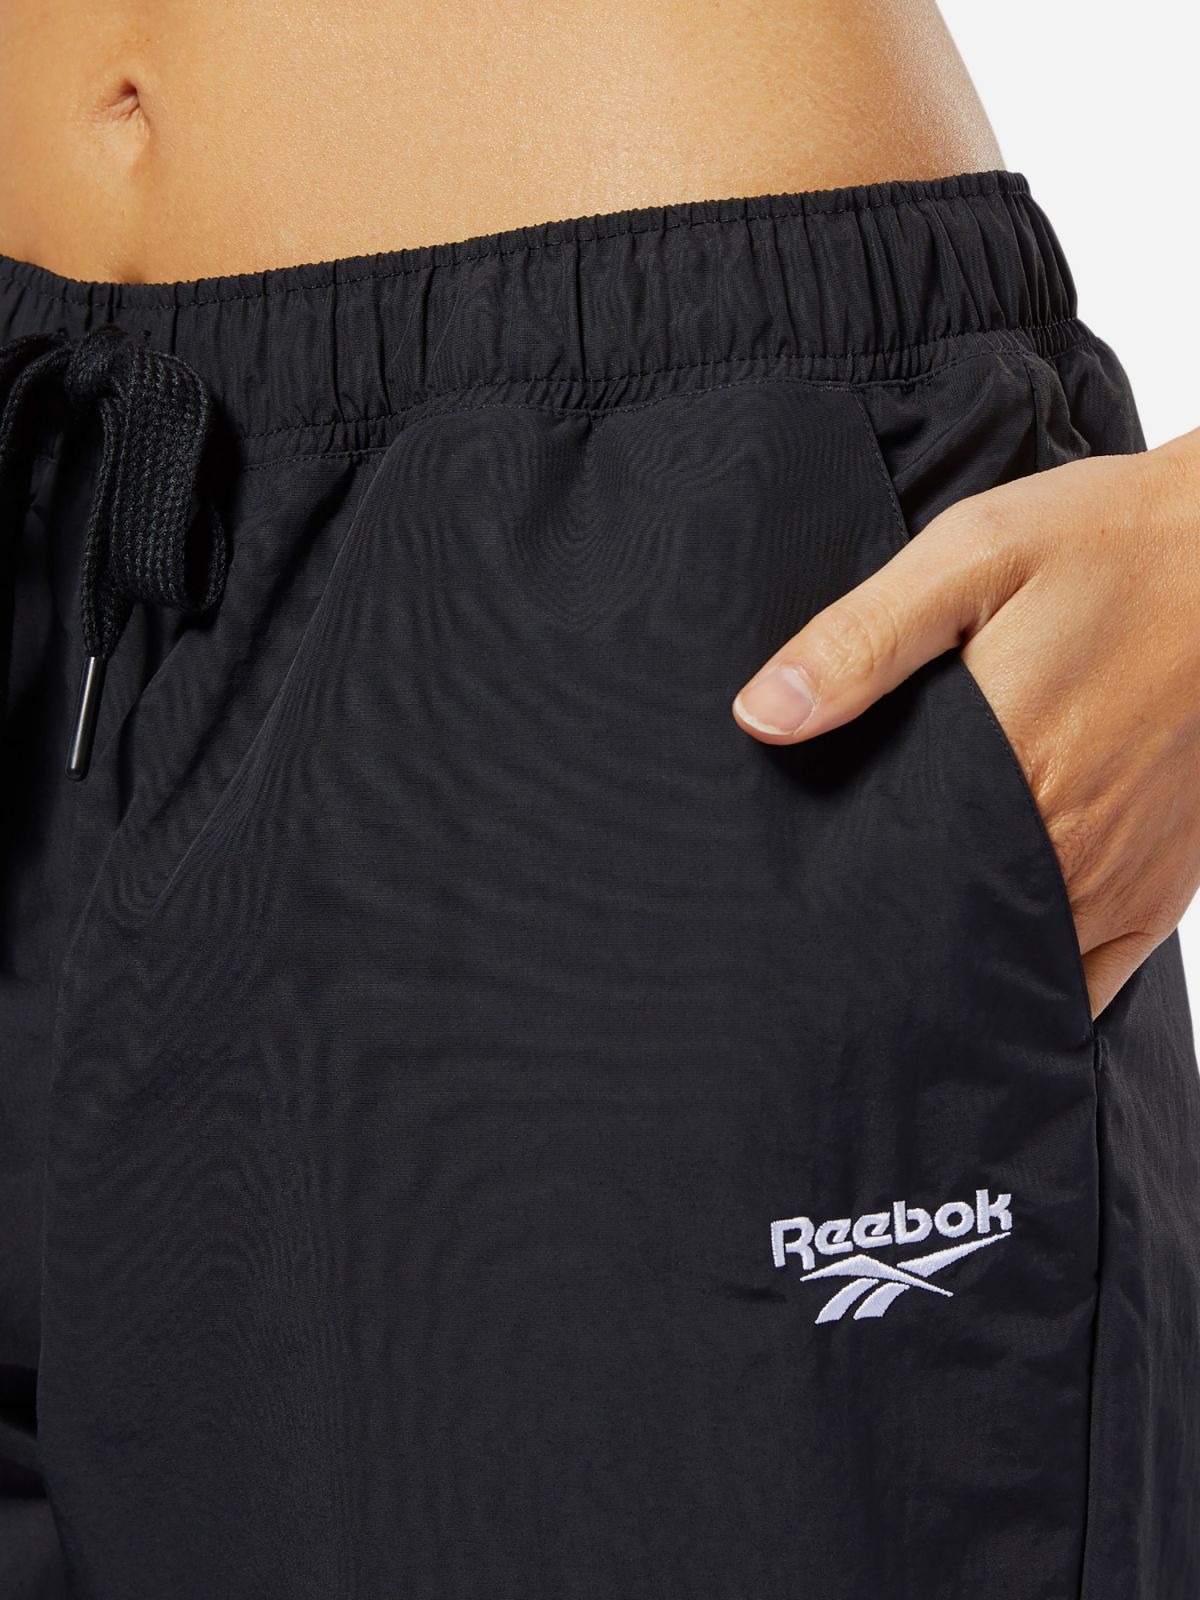  מכנסי ניילון ארוכים עם לוגו של REEBOK